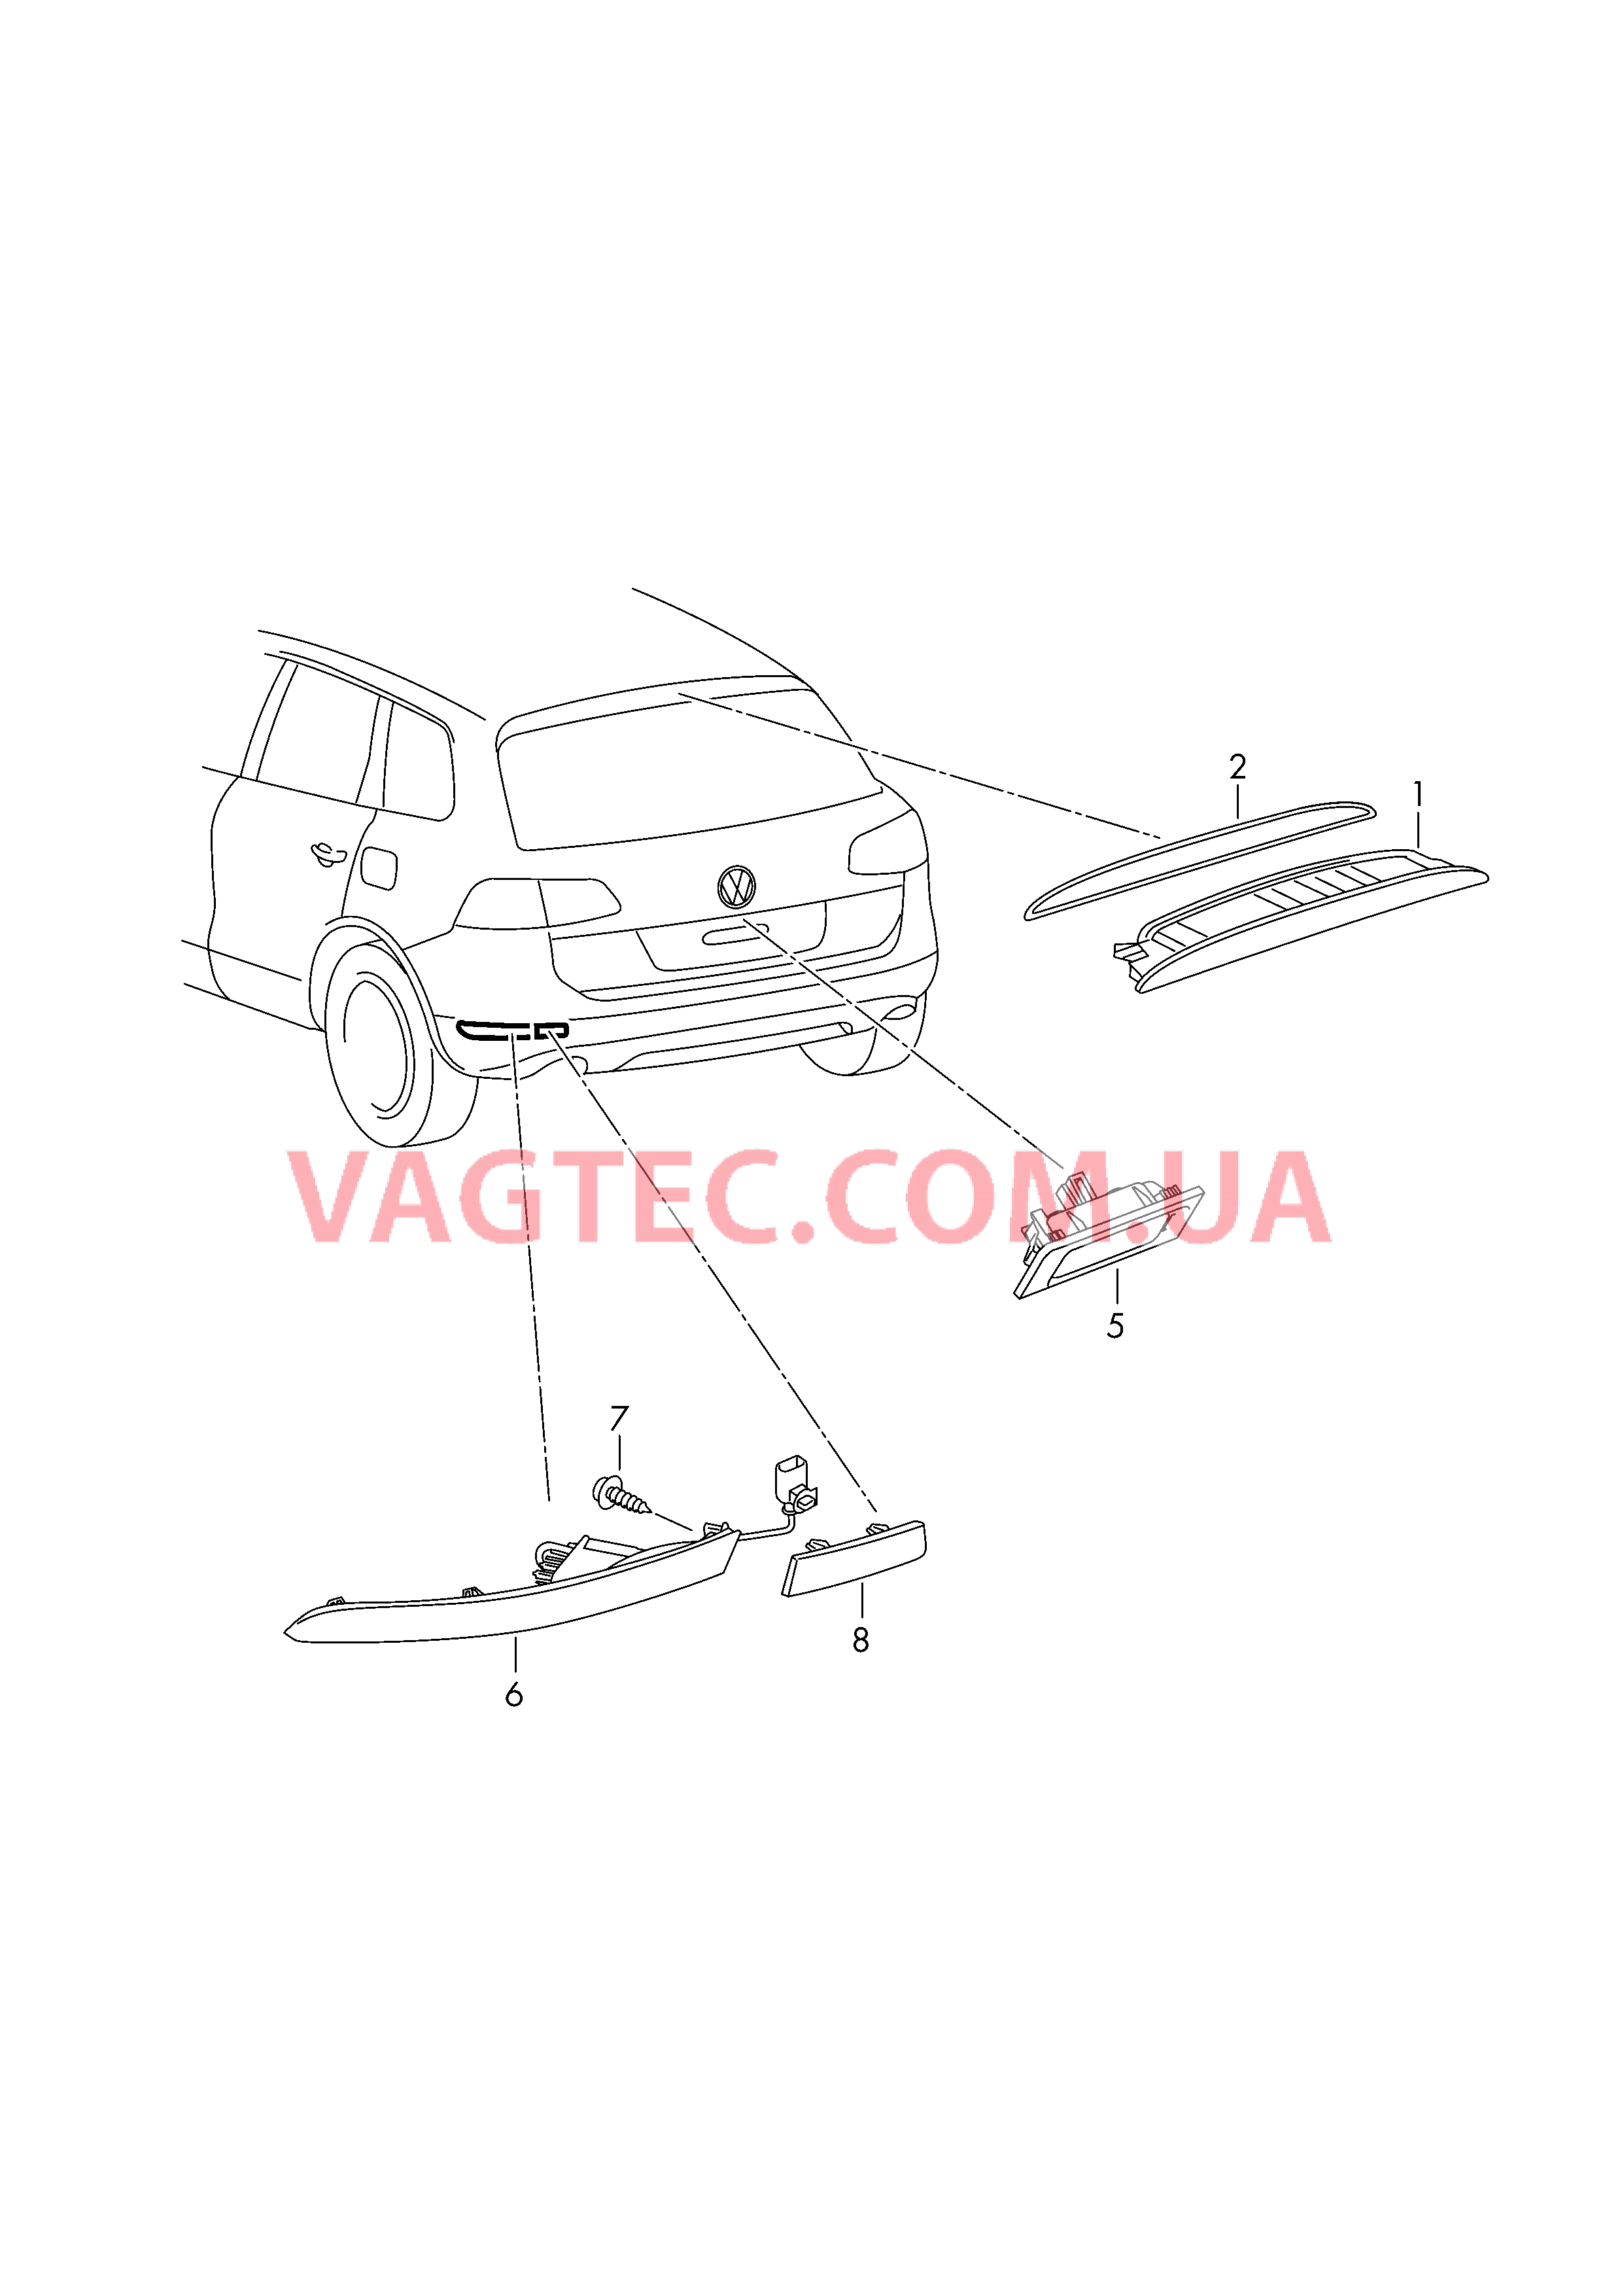 Верхний стоп-сигнал Плафон освещ. номерного знака Задний противотуманный фонарь Cветовозвращатель  для VOLKSWAGEN Touareg 2015